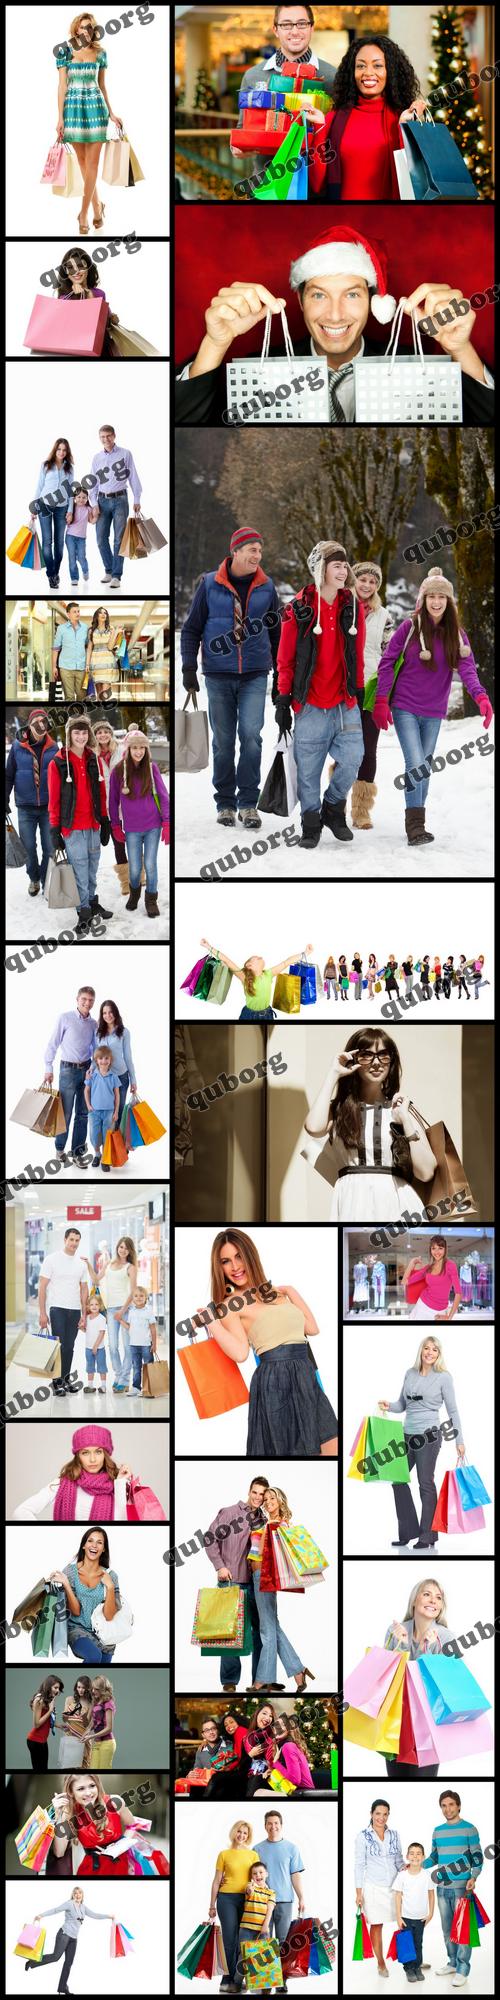 Stock Photos - Shopping Collection